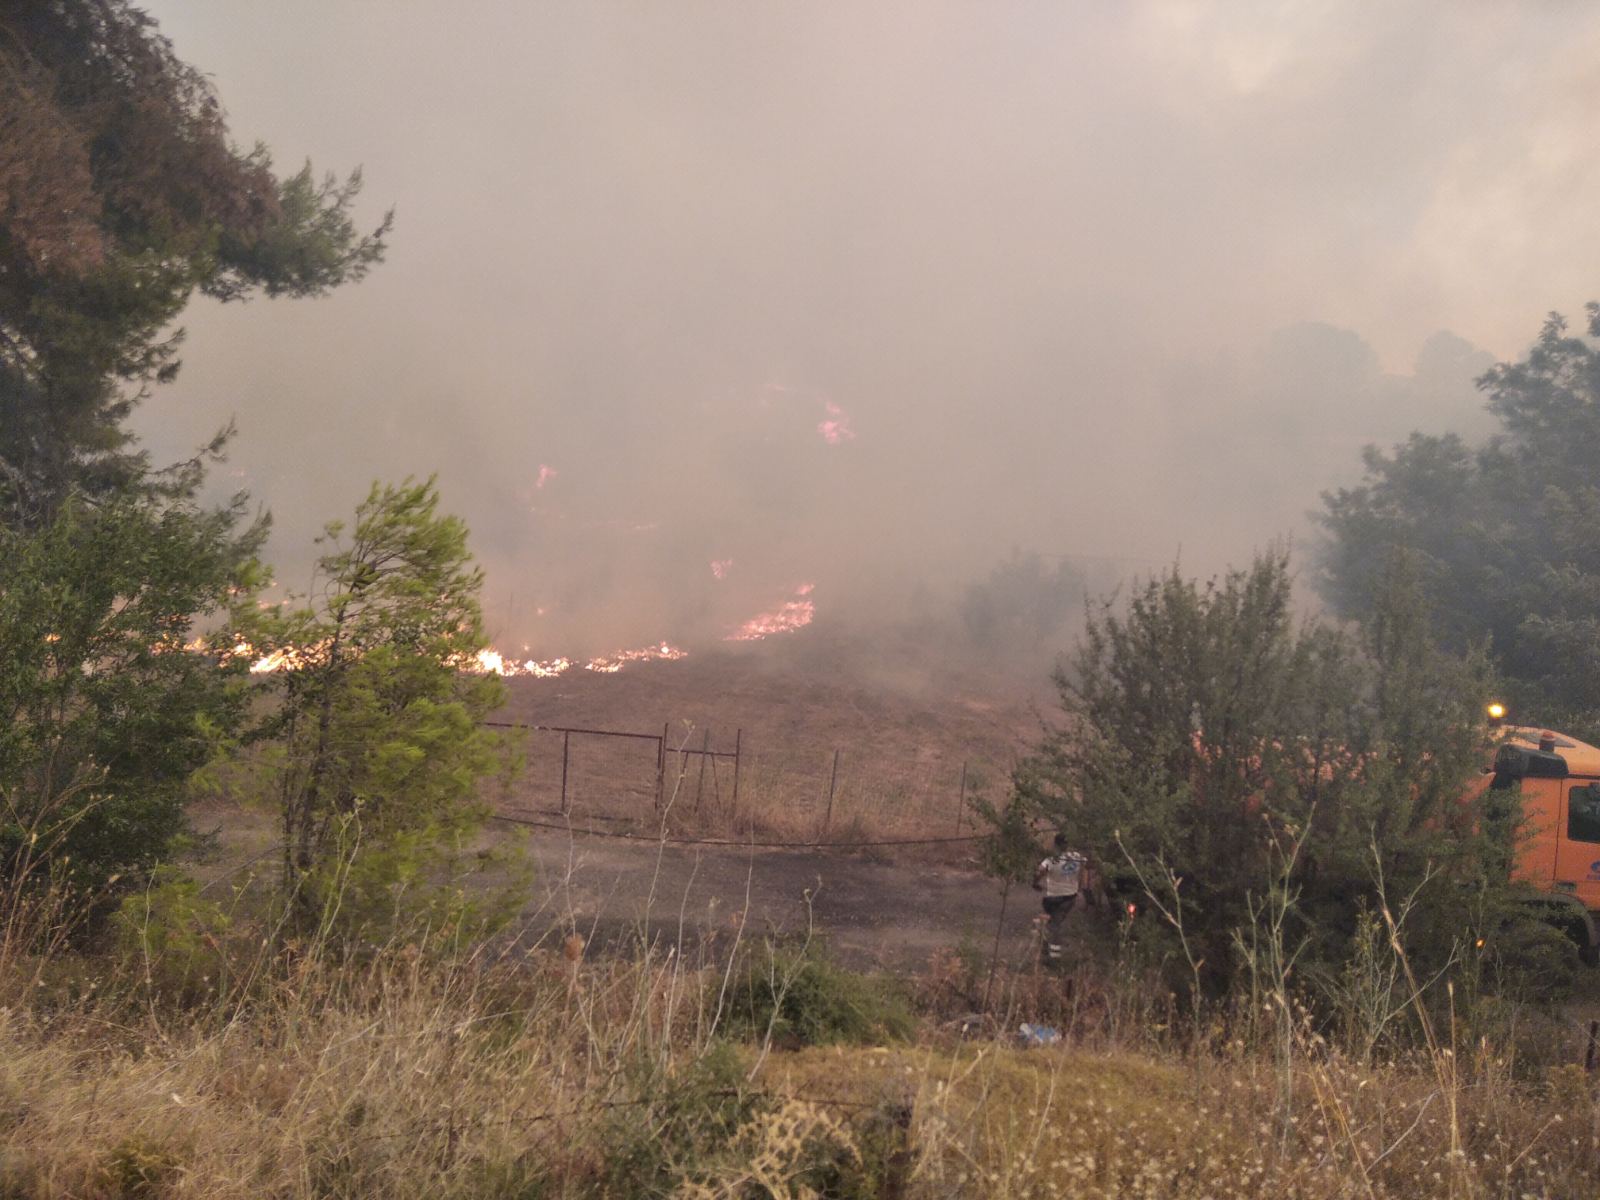 Φωτιά στην Αττική: Σε εξέλιξη νέο μέτωπο στη Μαλακάσα - Συνεχείς αναζωπυρώσεις σε Βαρυμπόμπη, Θρακομακεδόνες - Νέο μήνυμα από το 112 για εκκένωση περιοχών